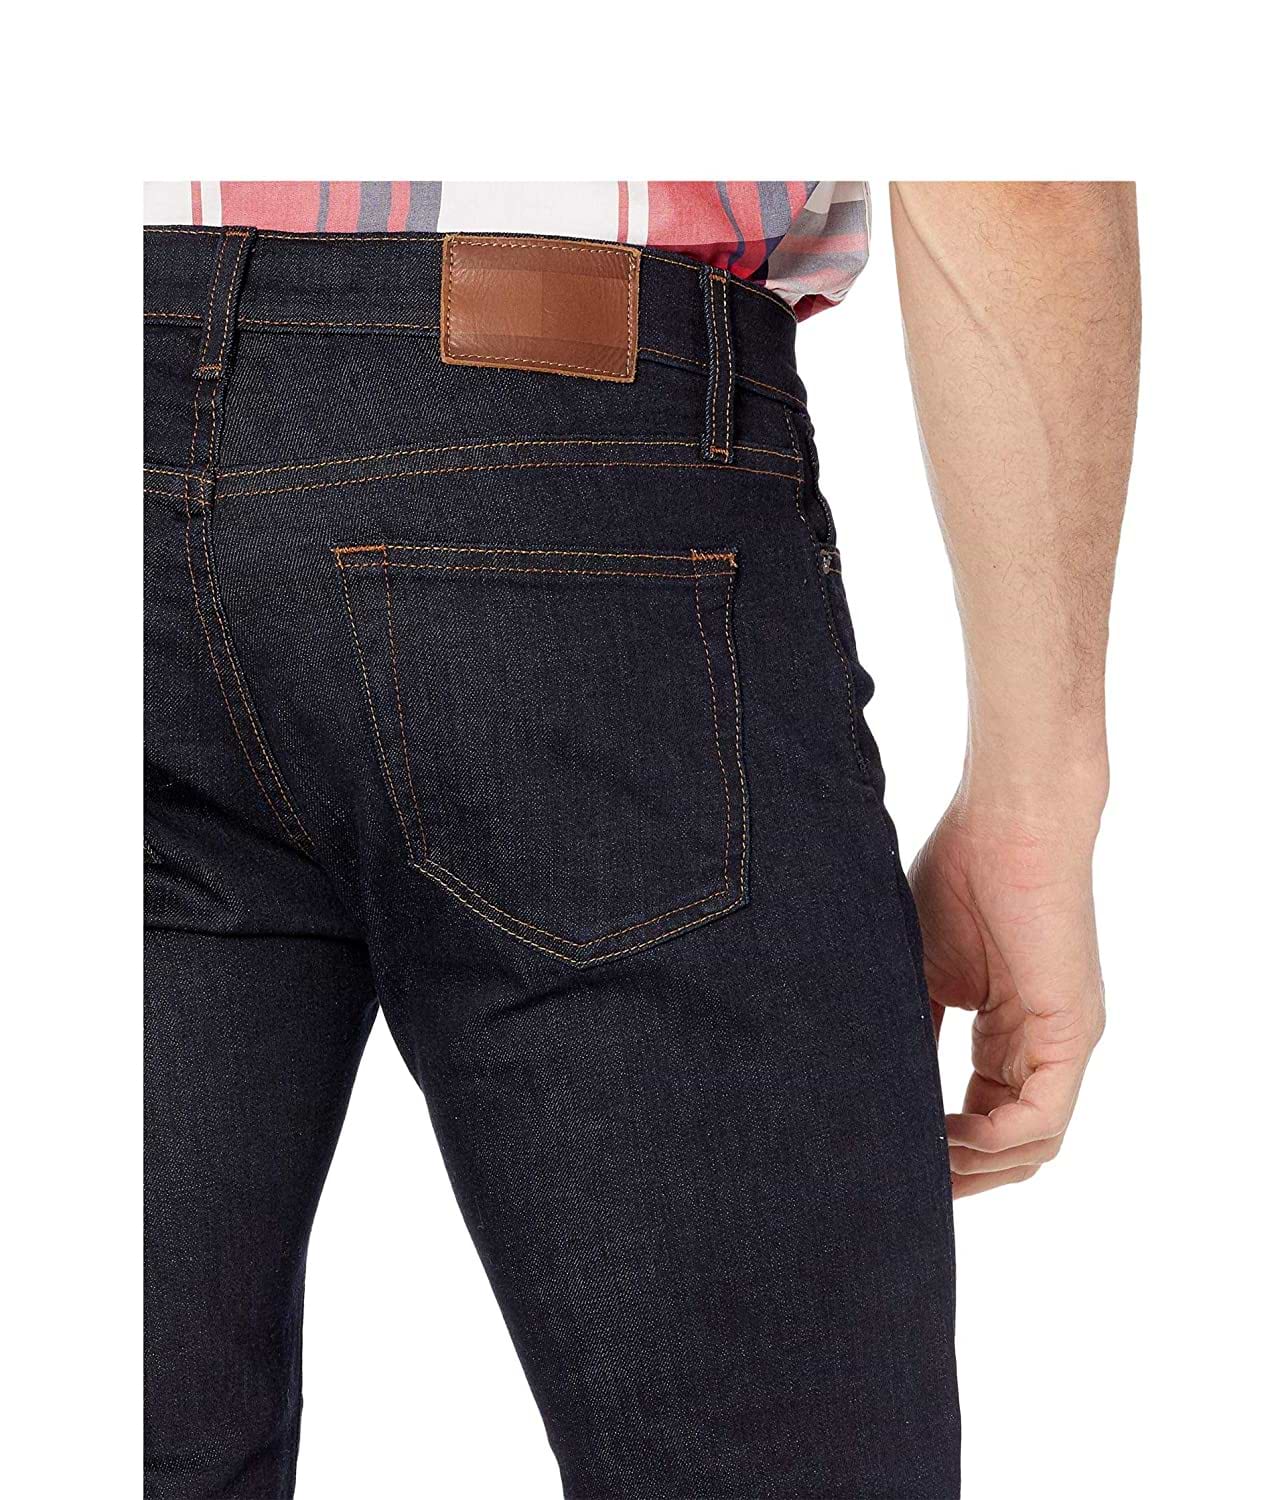 ג'ינס לגבר דגם Slim Fit Stretch מידה 40 צבע כחול Tommy Hilfiger - יבואן מקביל